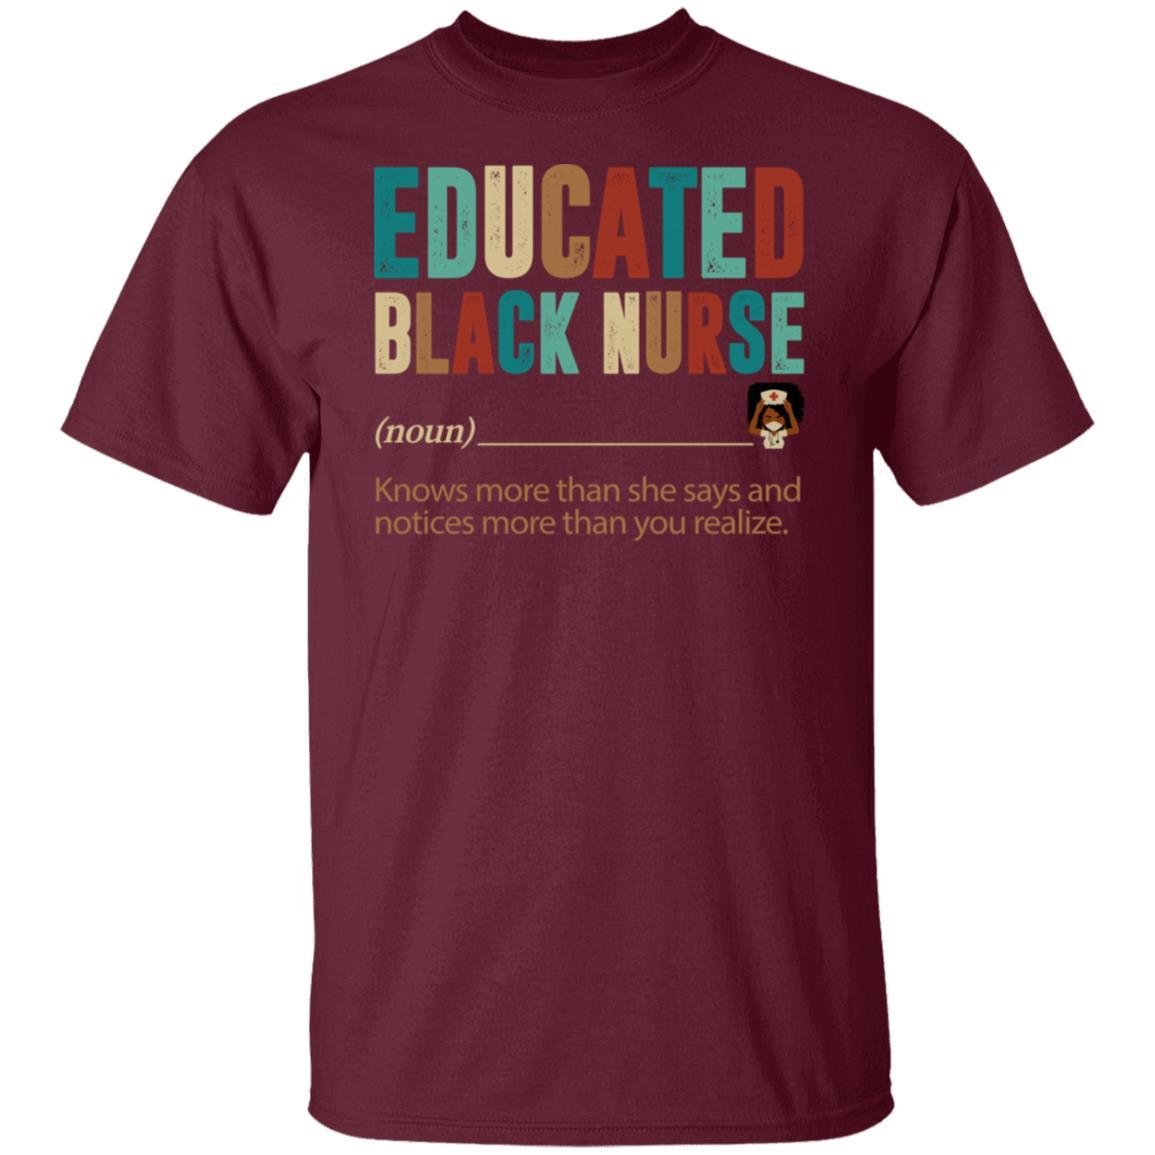 Educated Black Nurse T-shirt Apparel CustomCat Unisex Tee Maroon S